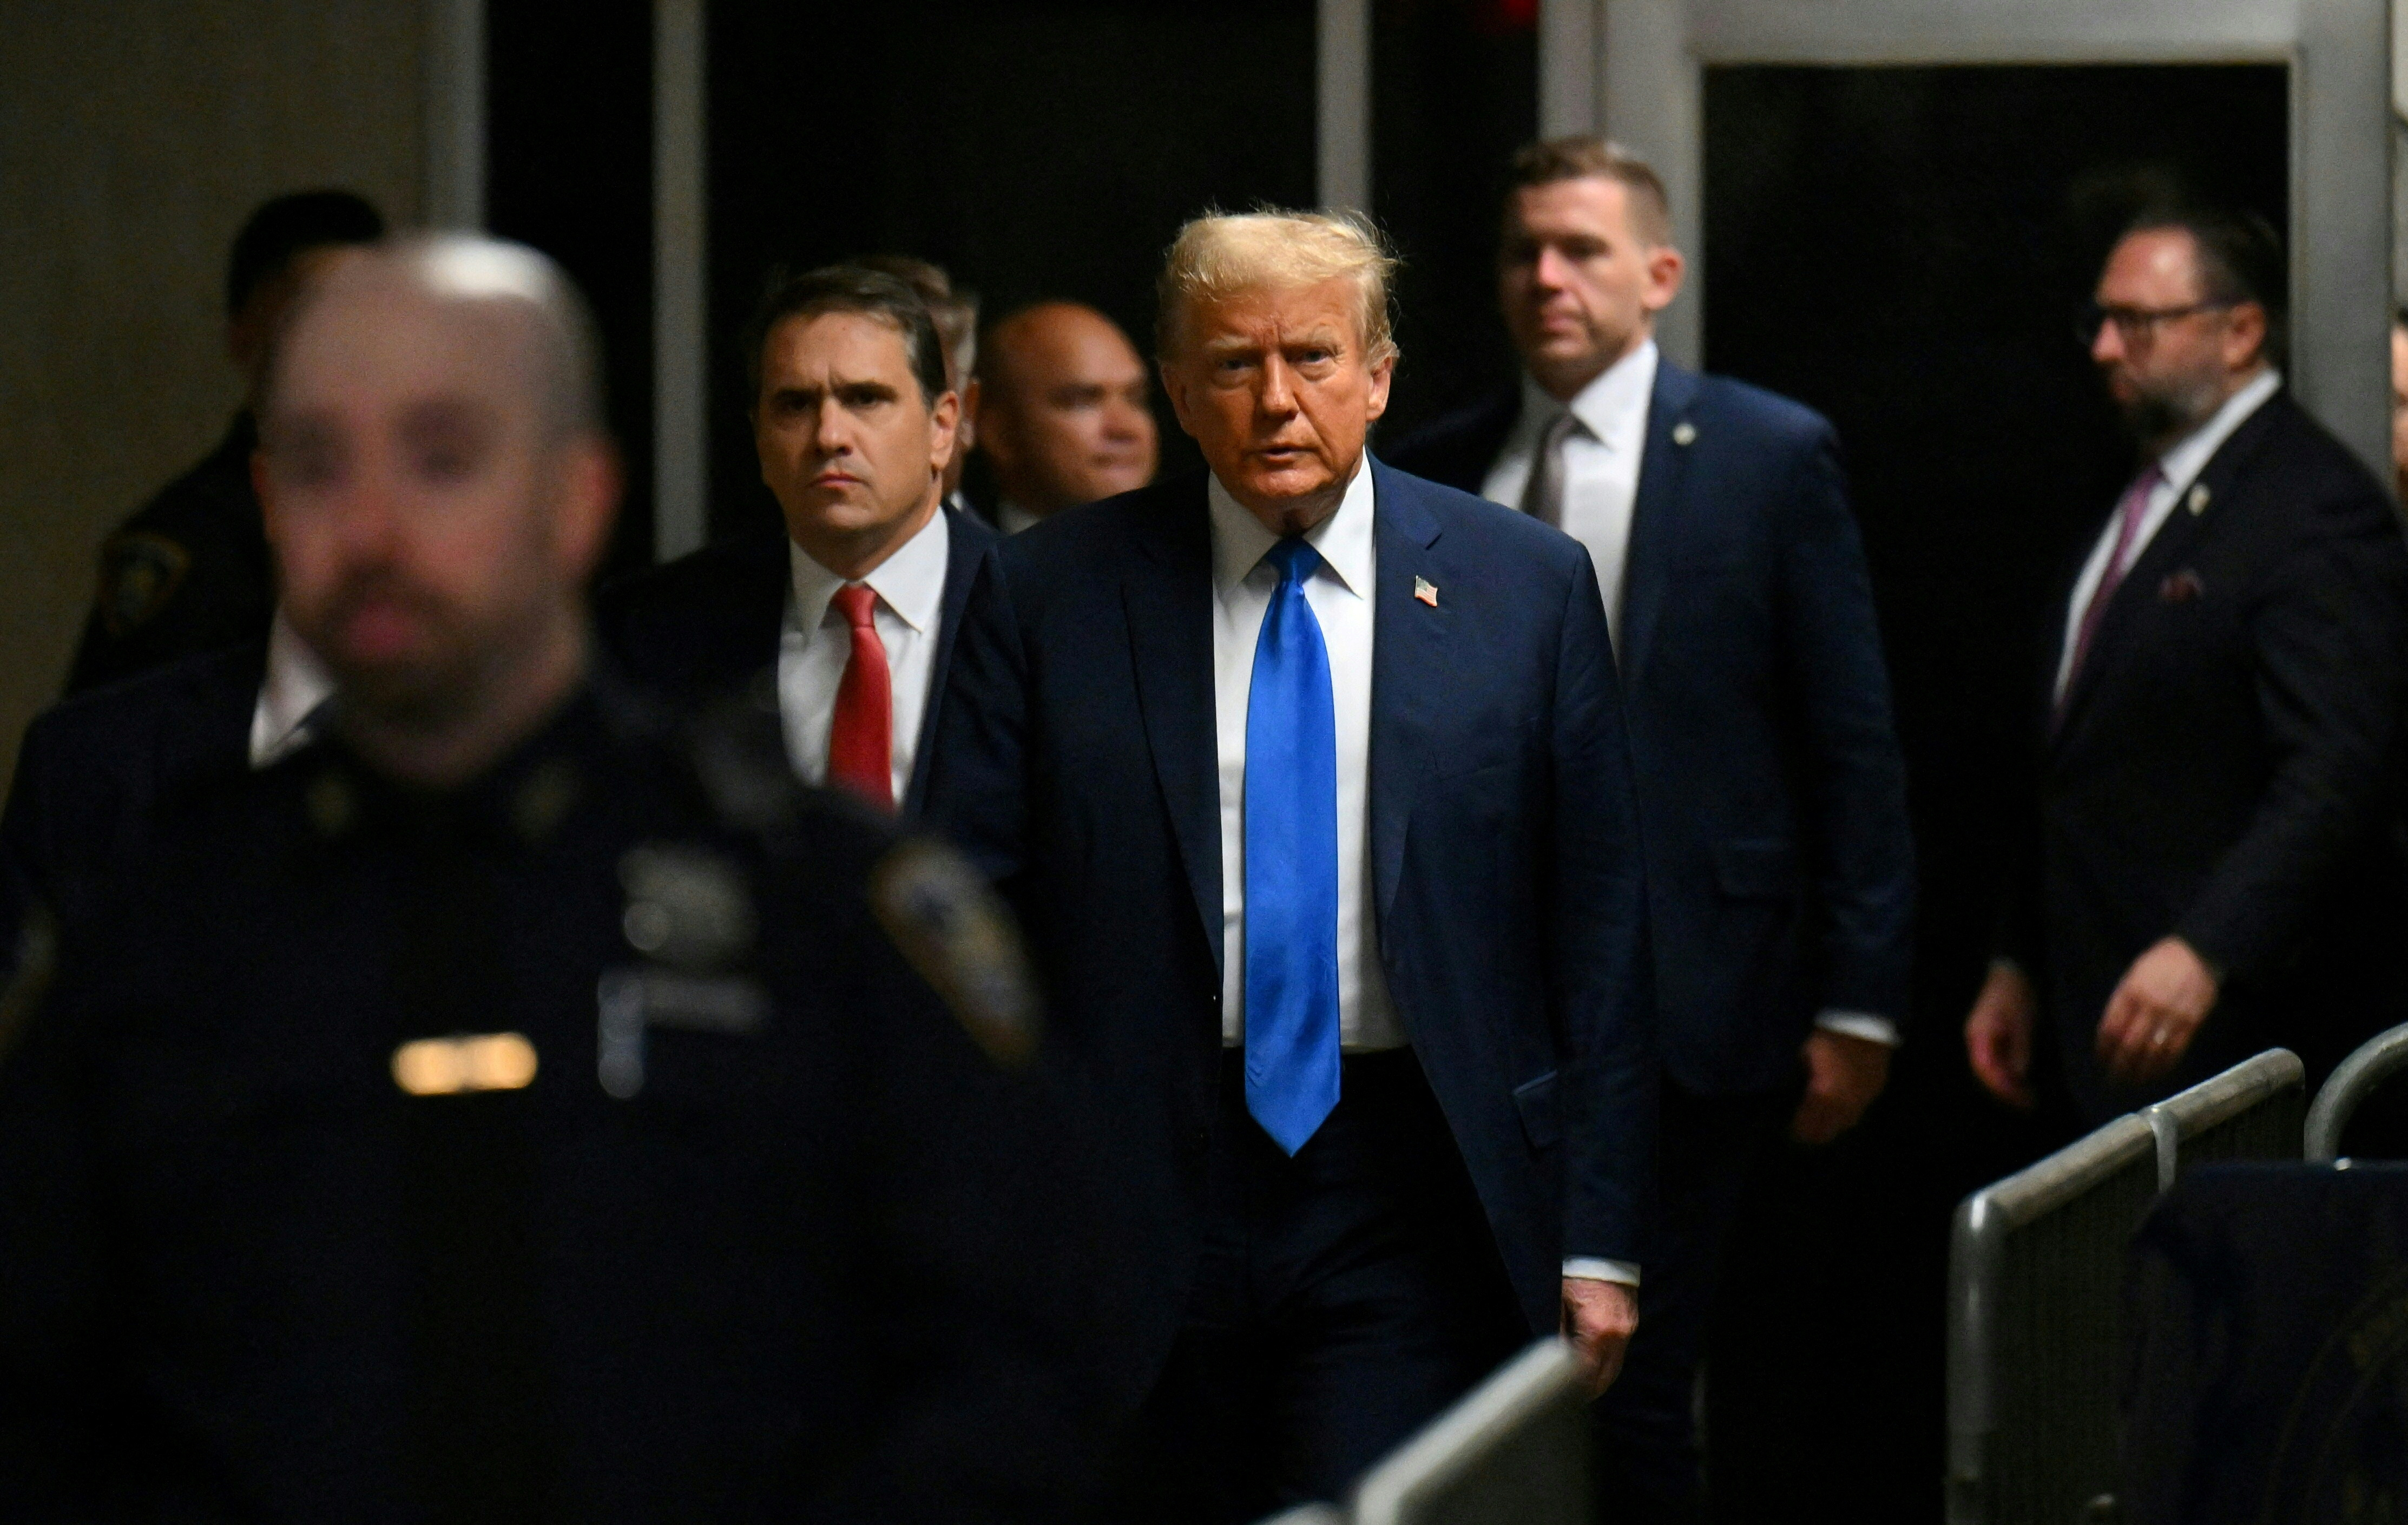 Continúa en Nueva York el juicio penal del expresidente estadounidense Trump por cargos de falsificación de registros comerciales